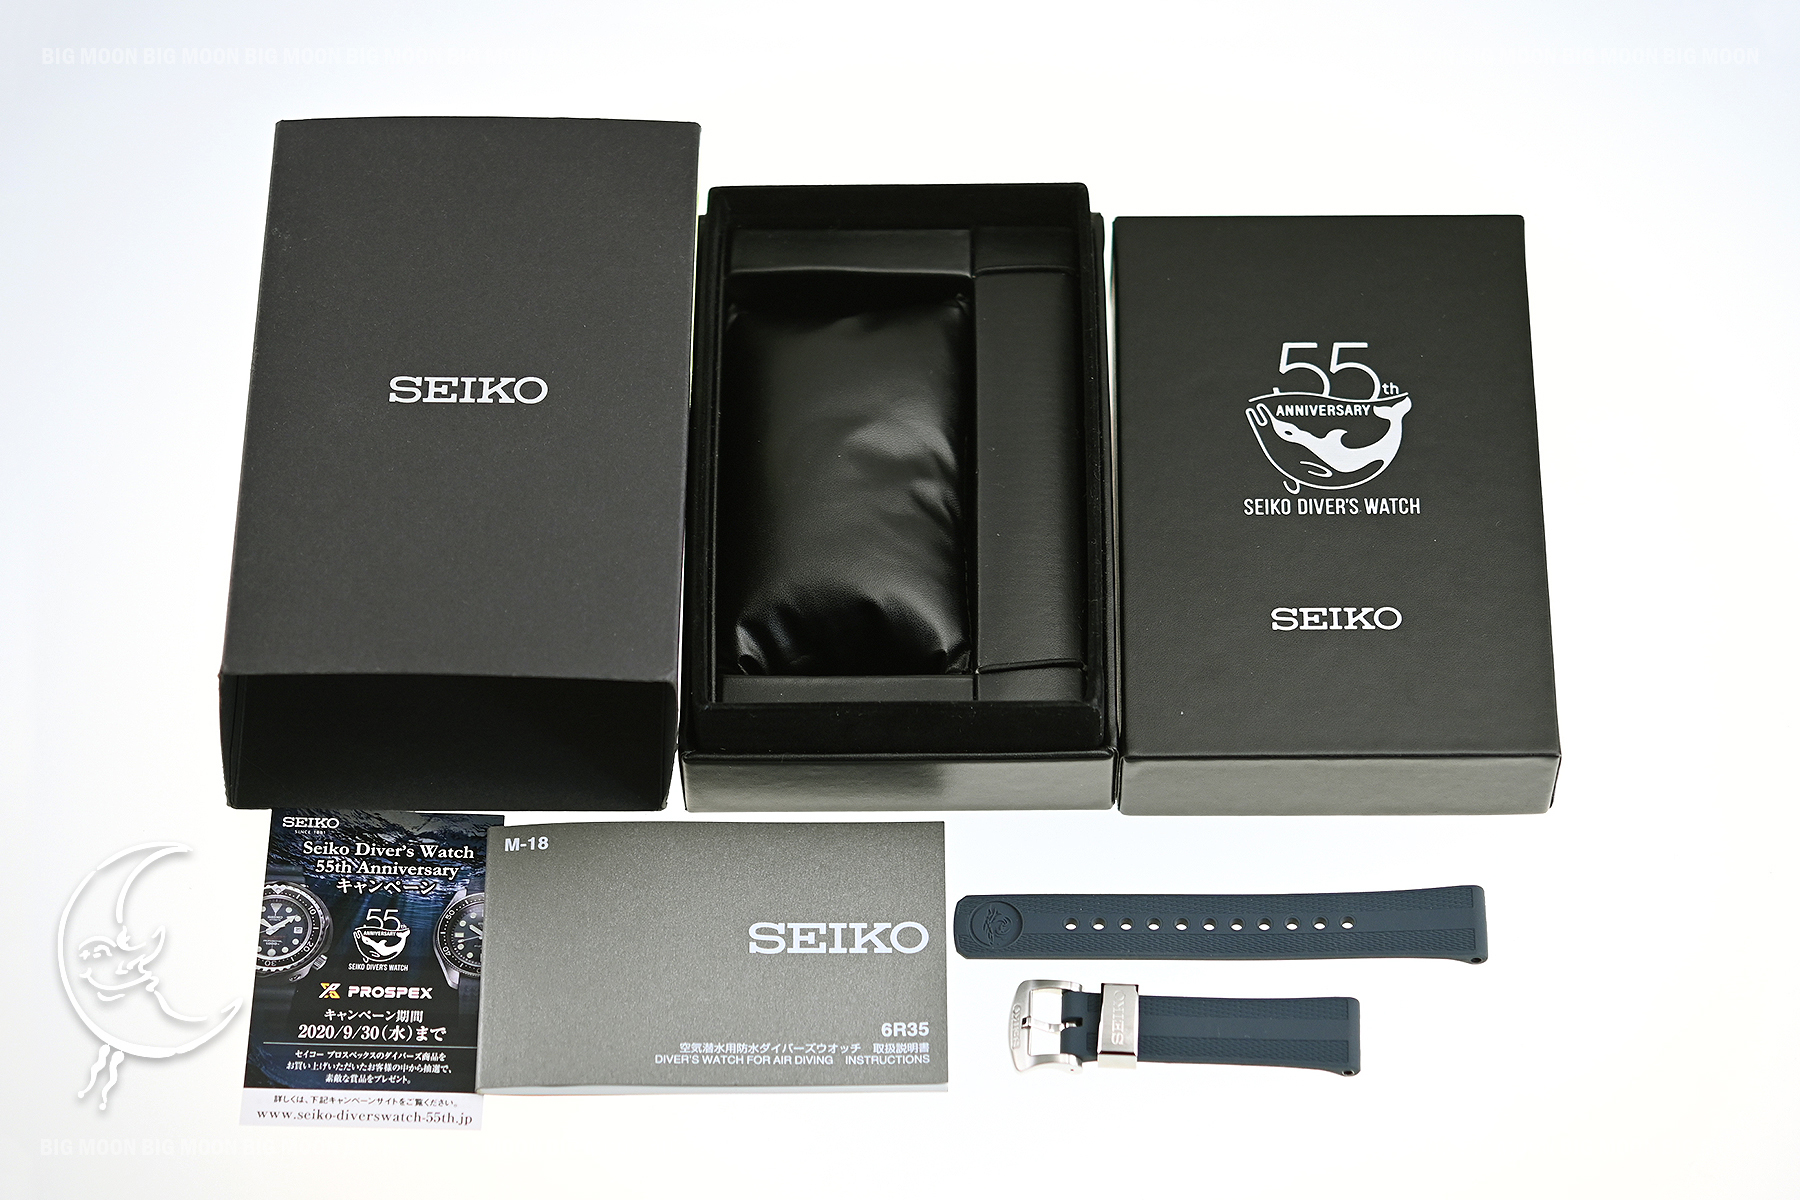 SEIKOのプロスペックス セイコーダイバーズ 55周年記念モデル 限定5500